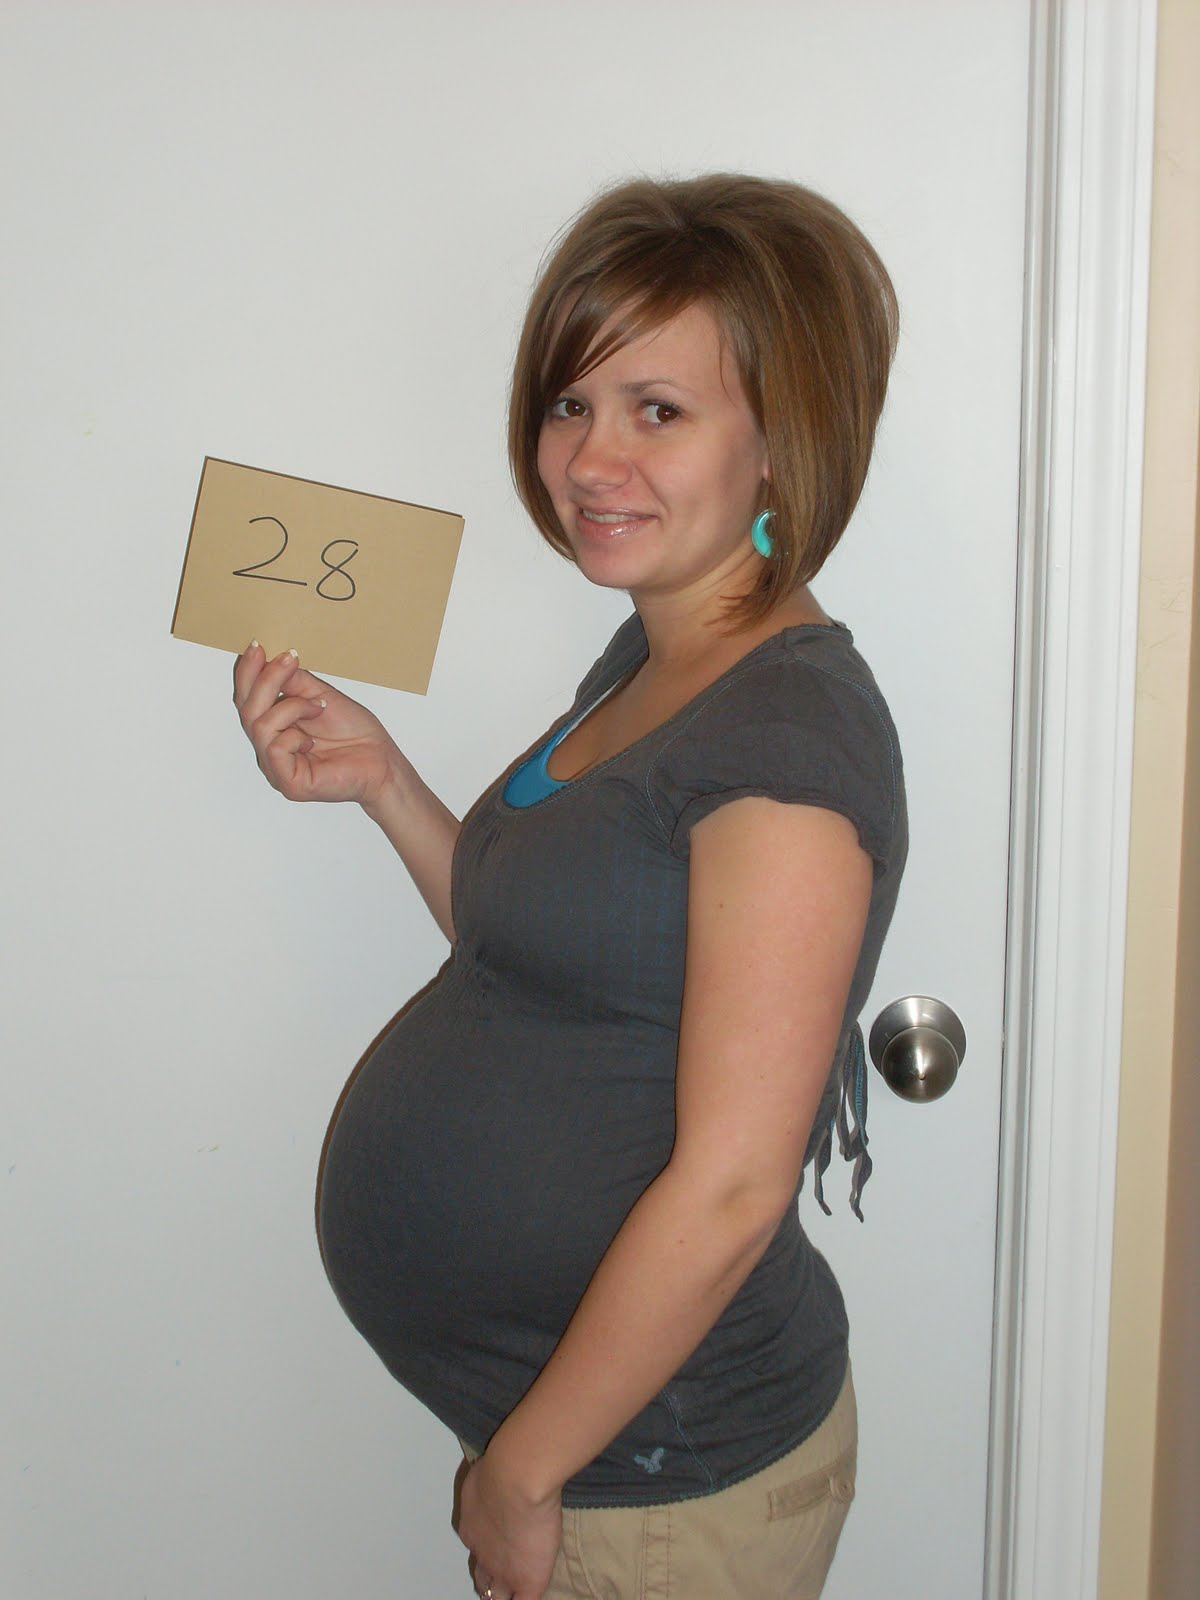 Фото пятый месяц беременности фото